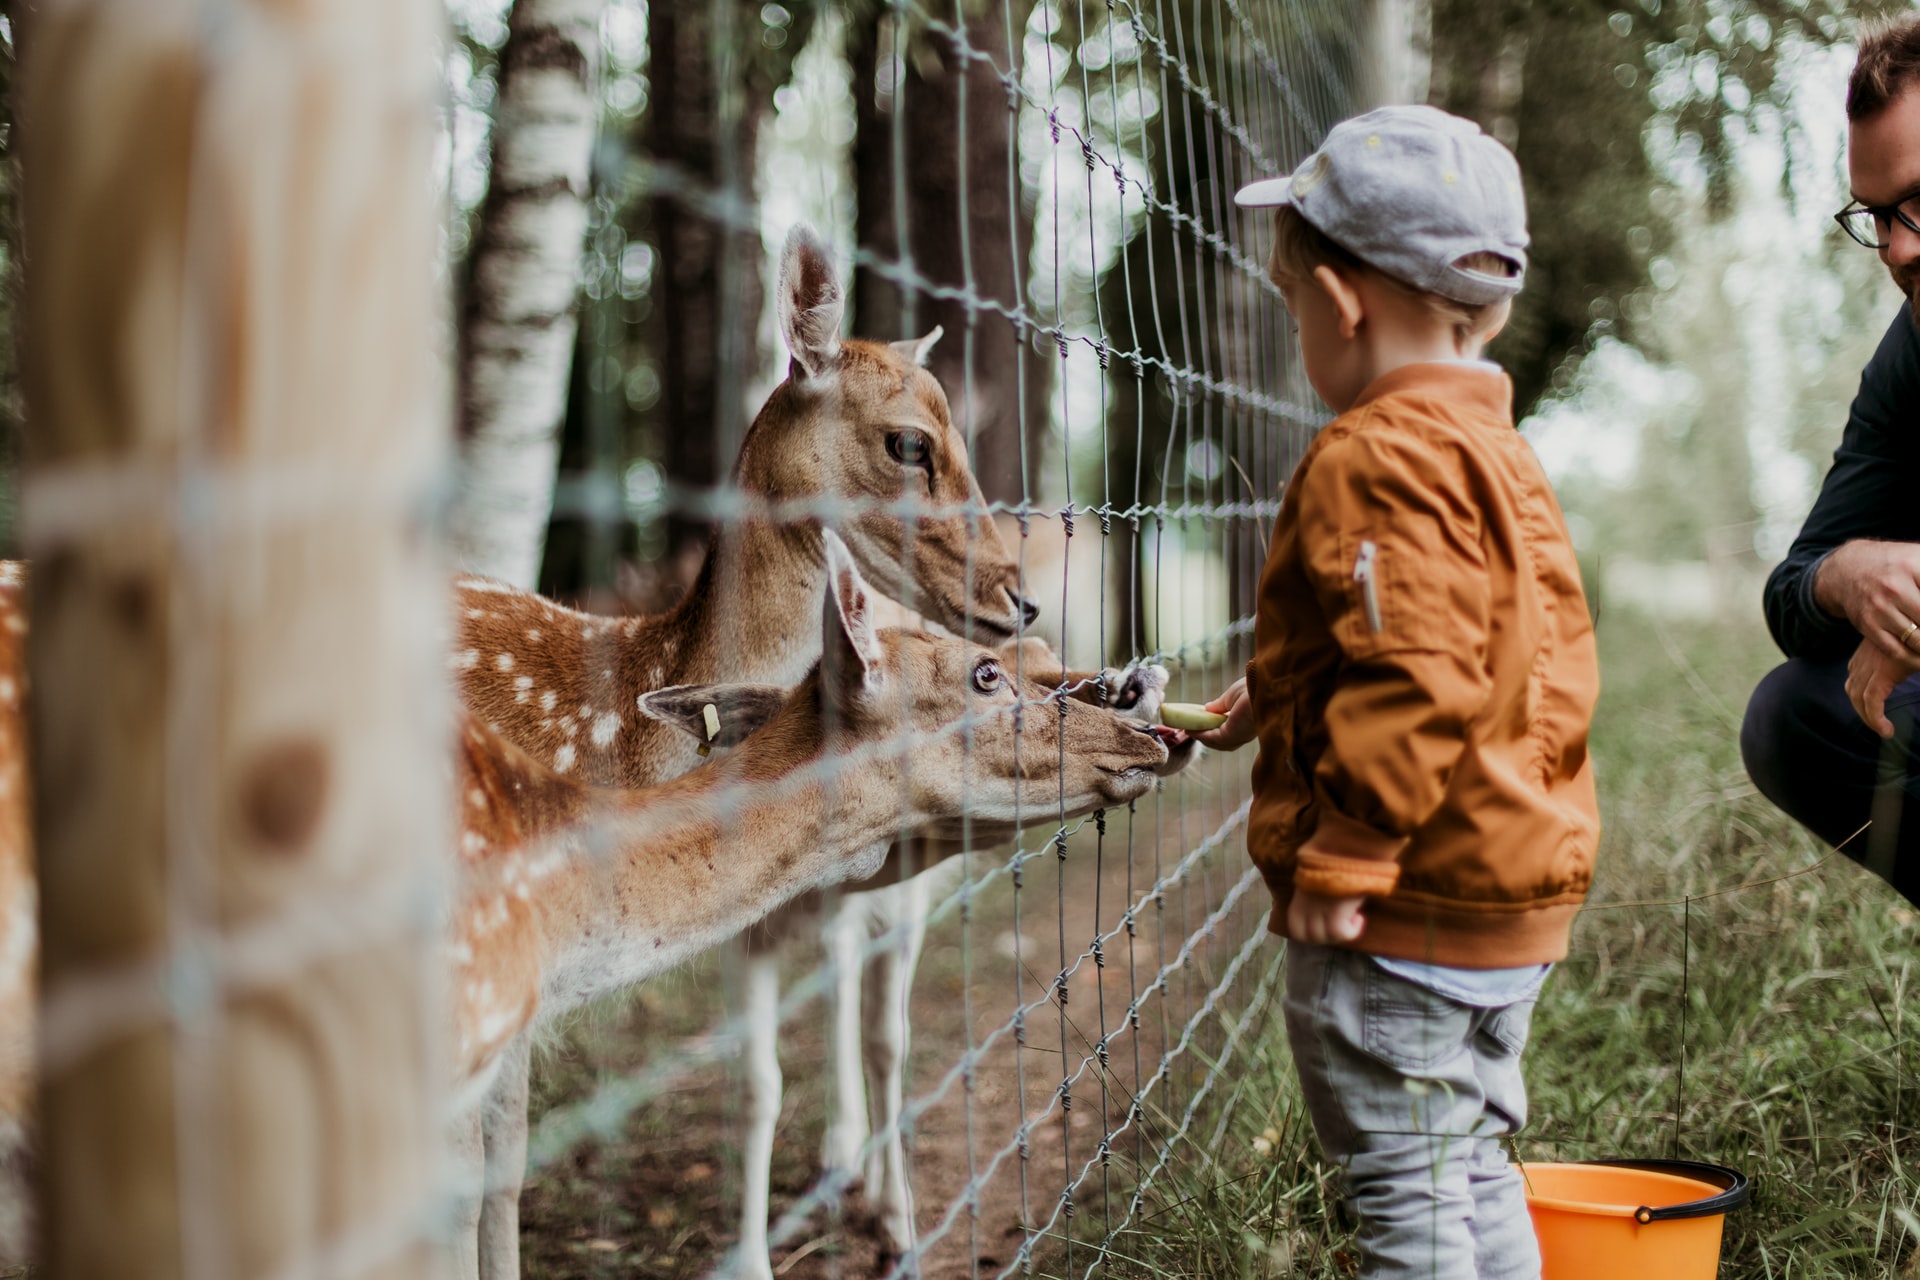 boy feeding a giraffe in Oakland Zoo